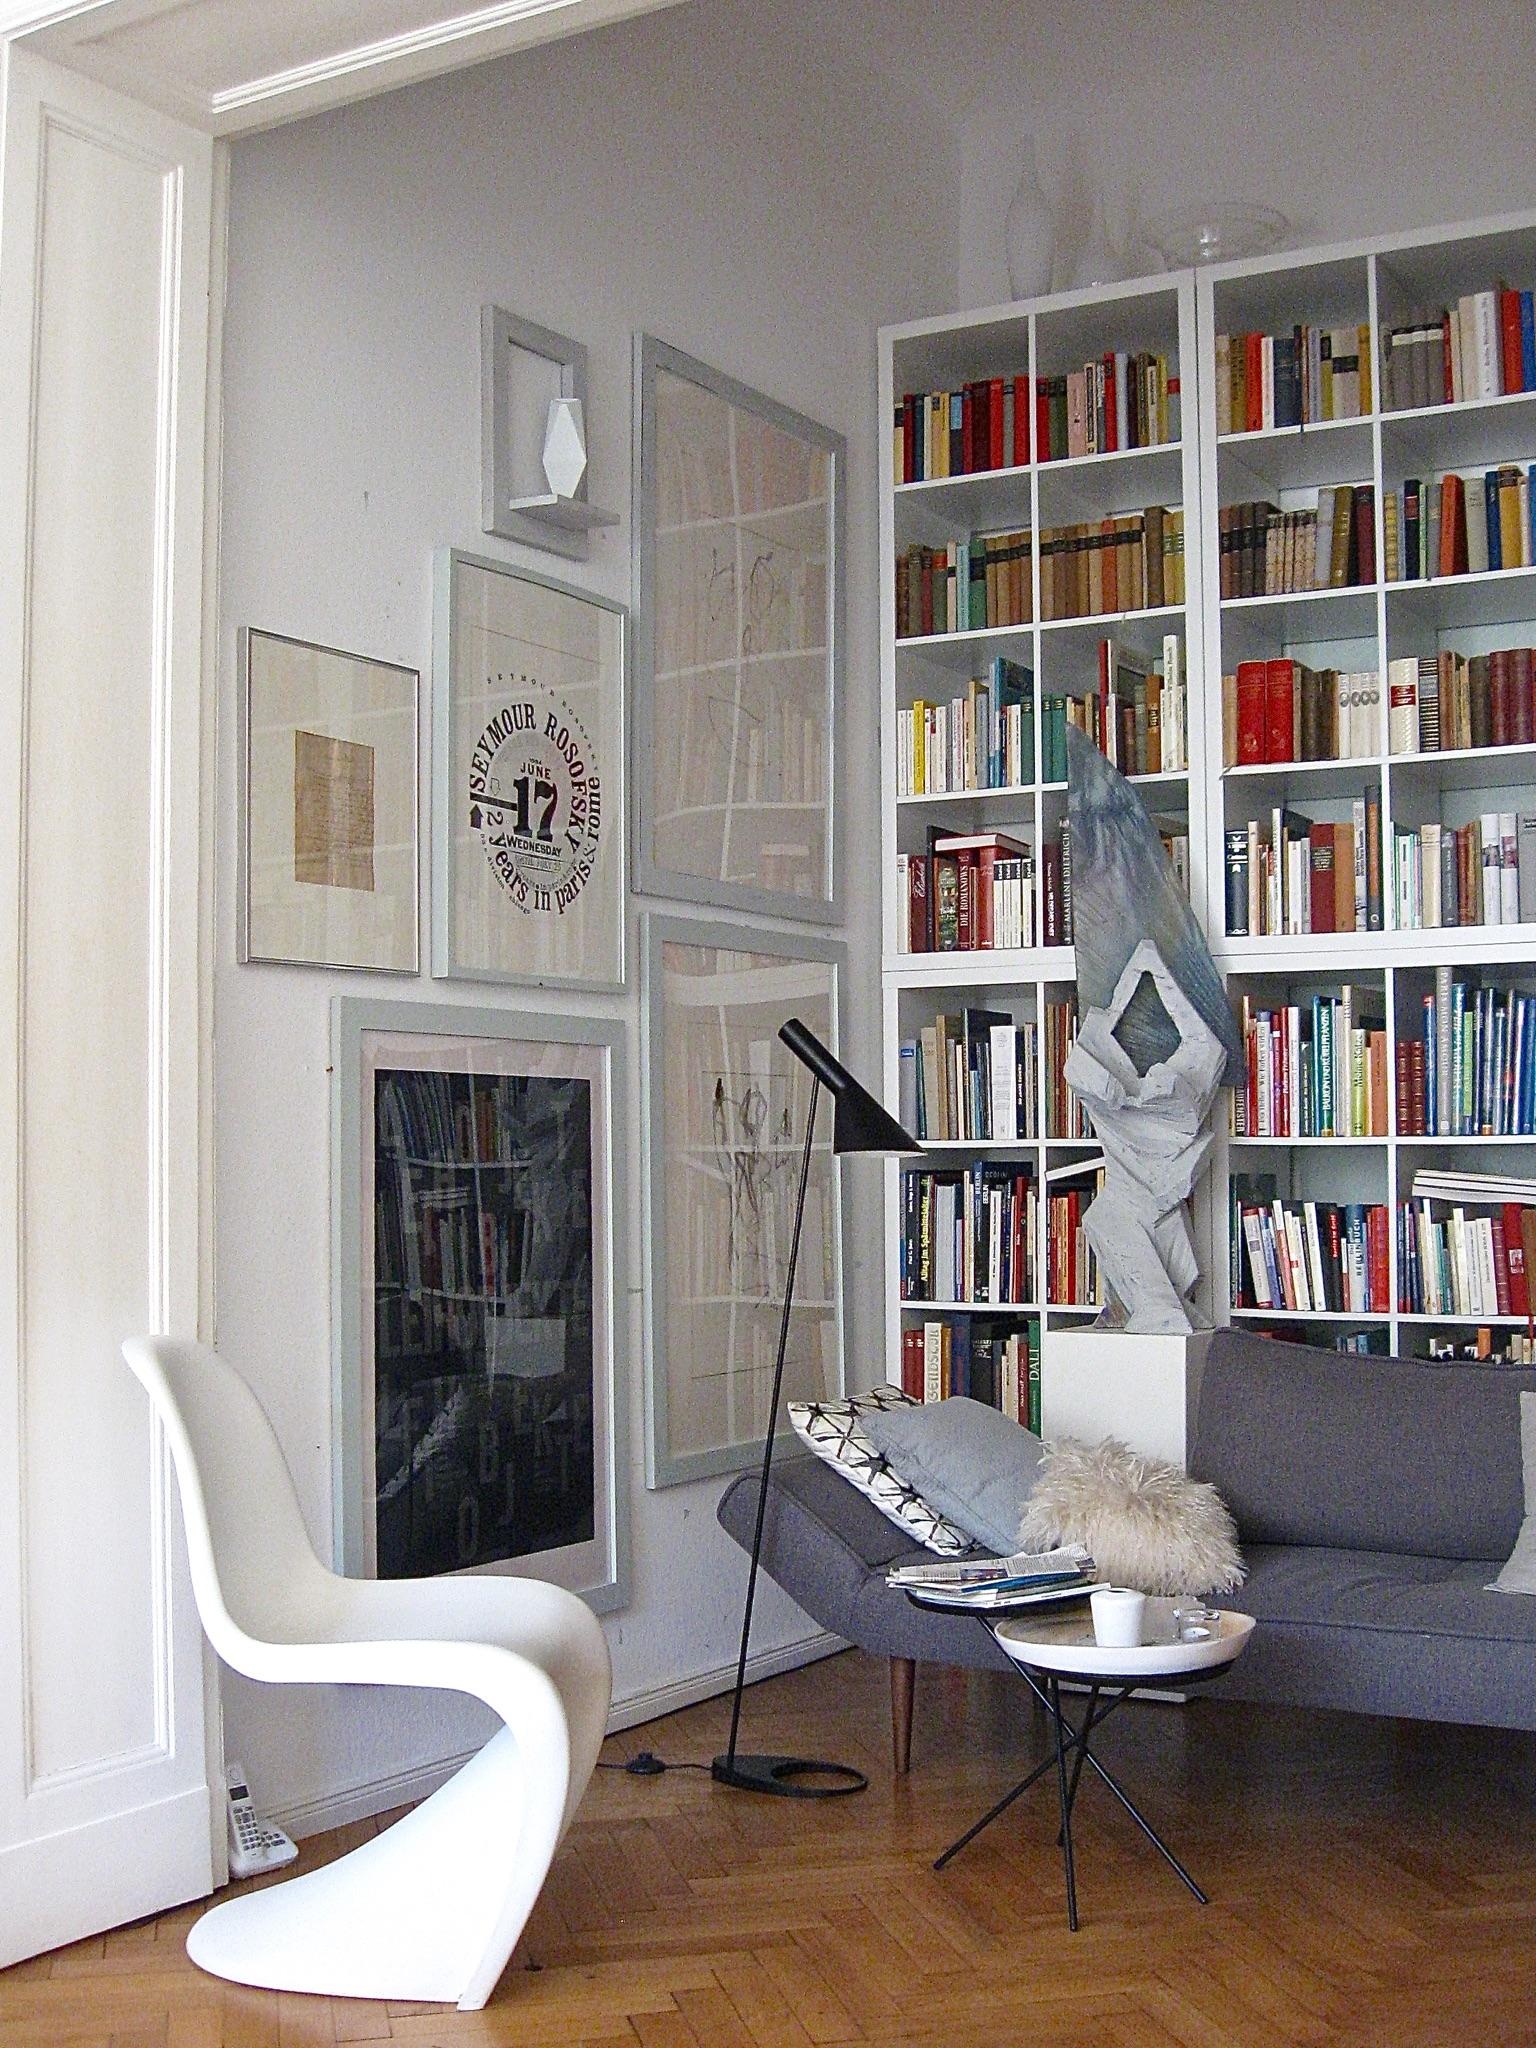 #wohnzimmer #bücherwand #arnejacobsen #art  #pantonchair #bilderwand
Büchereck
